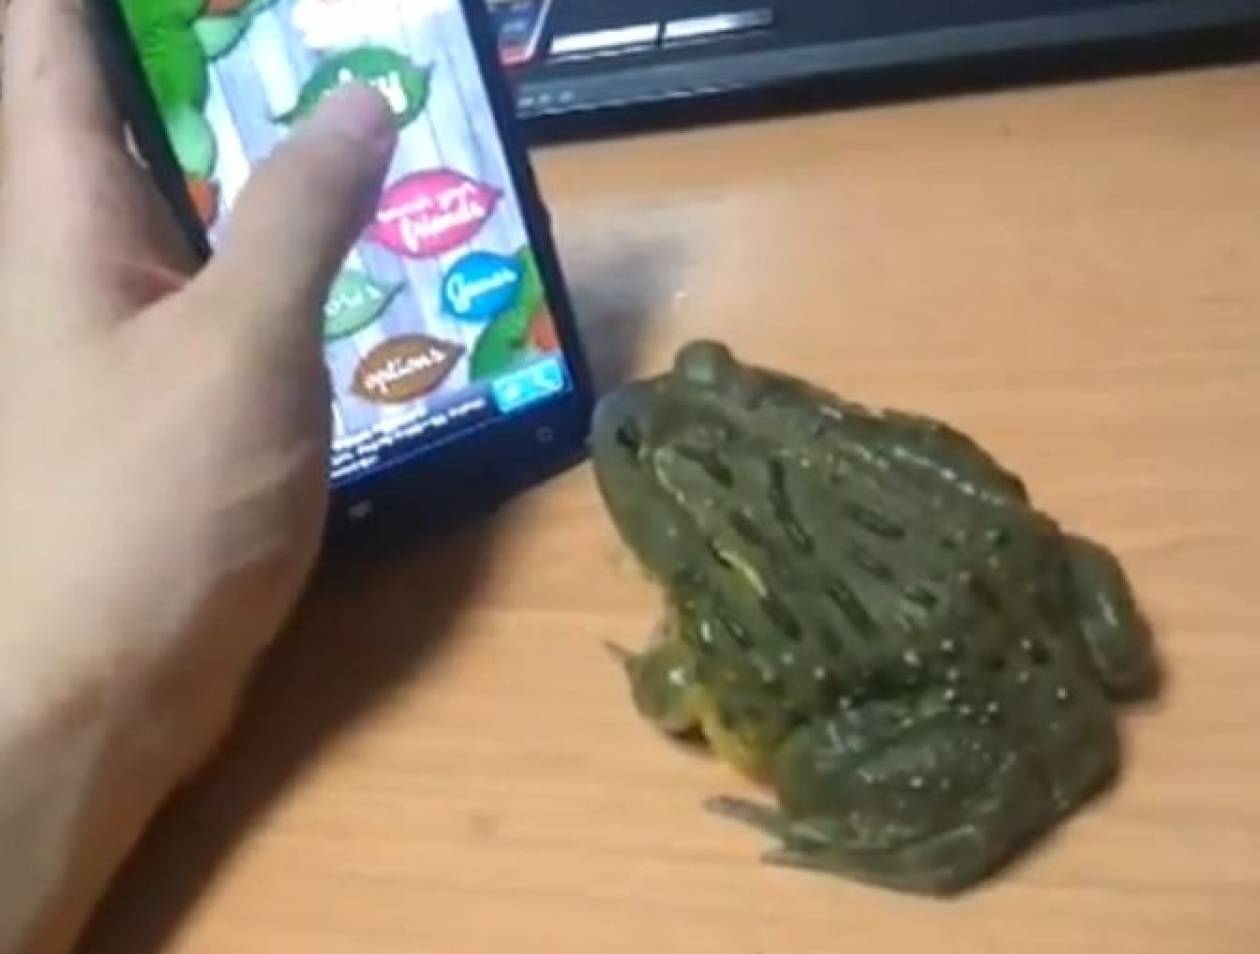 Βάτραχος παίζει παιχνίδια στο κινητό